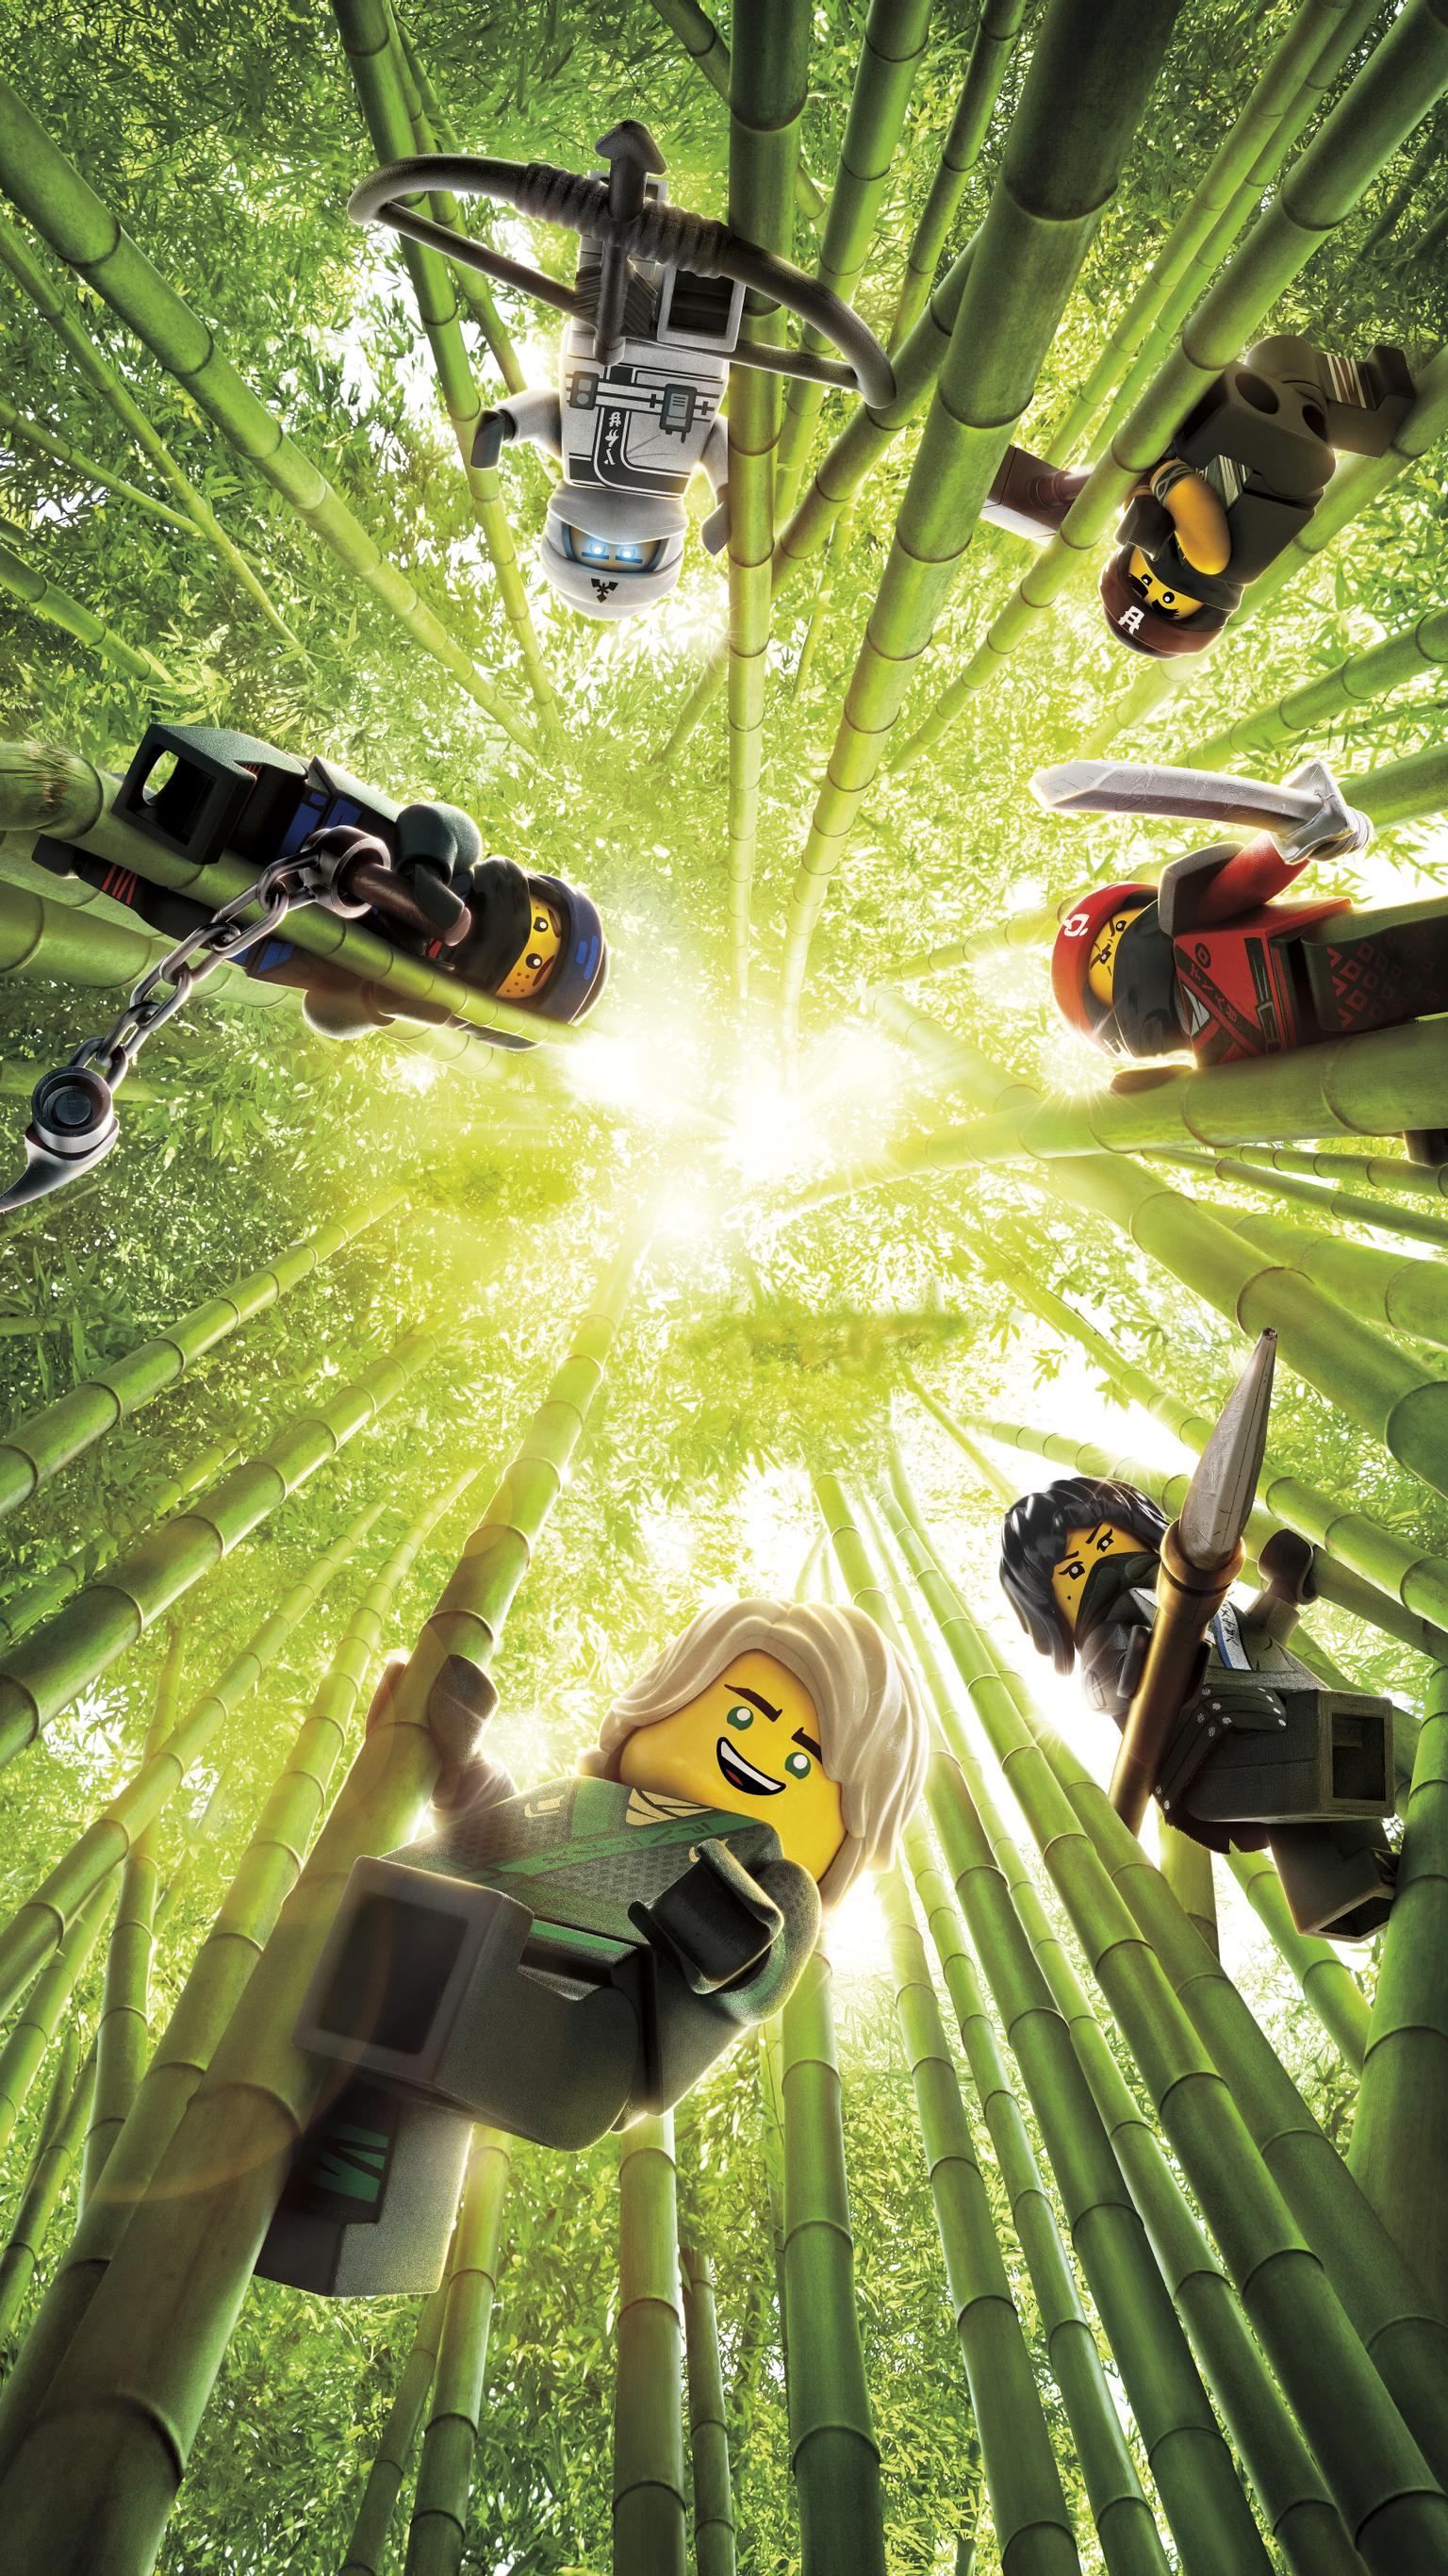 2017 The Lego Ninjago Movie Wallpapers